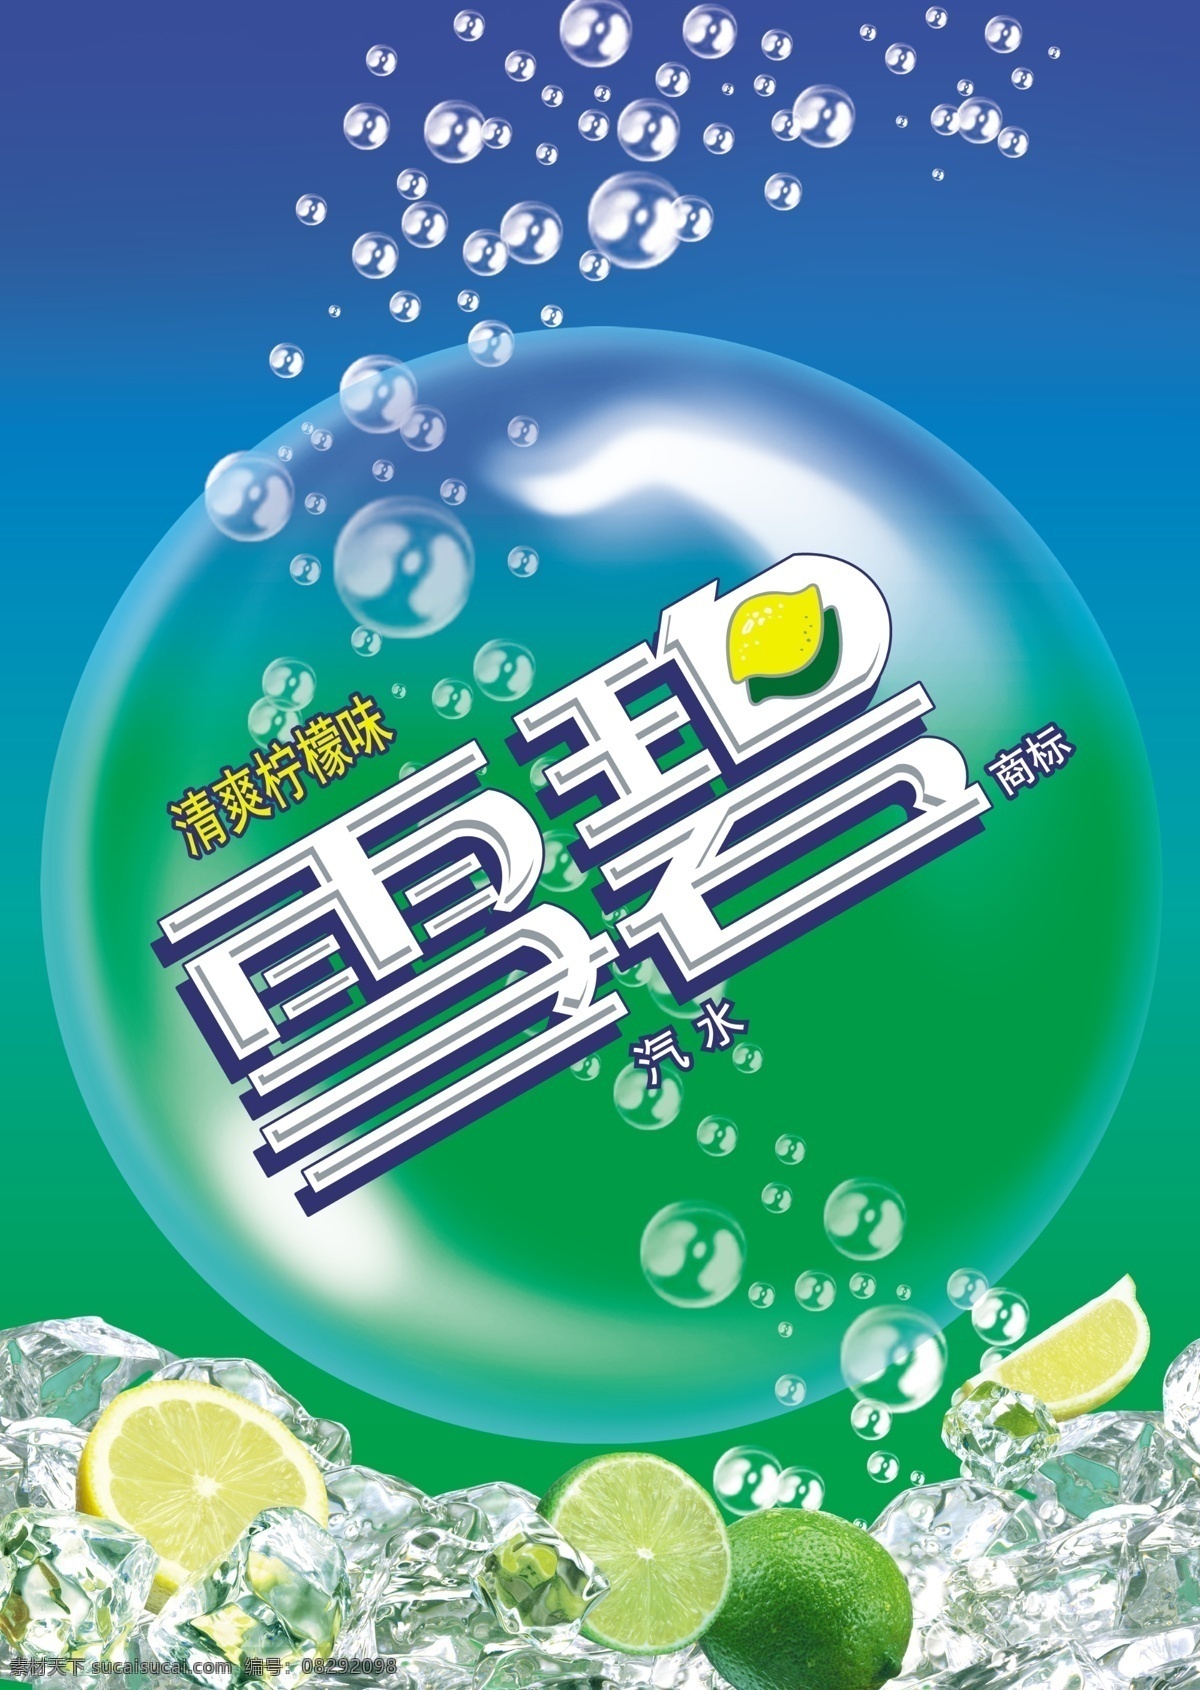 雪碧 雪碧logo 柠檬 可口可乐 绿色